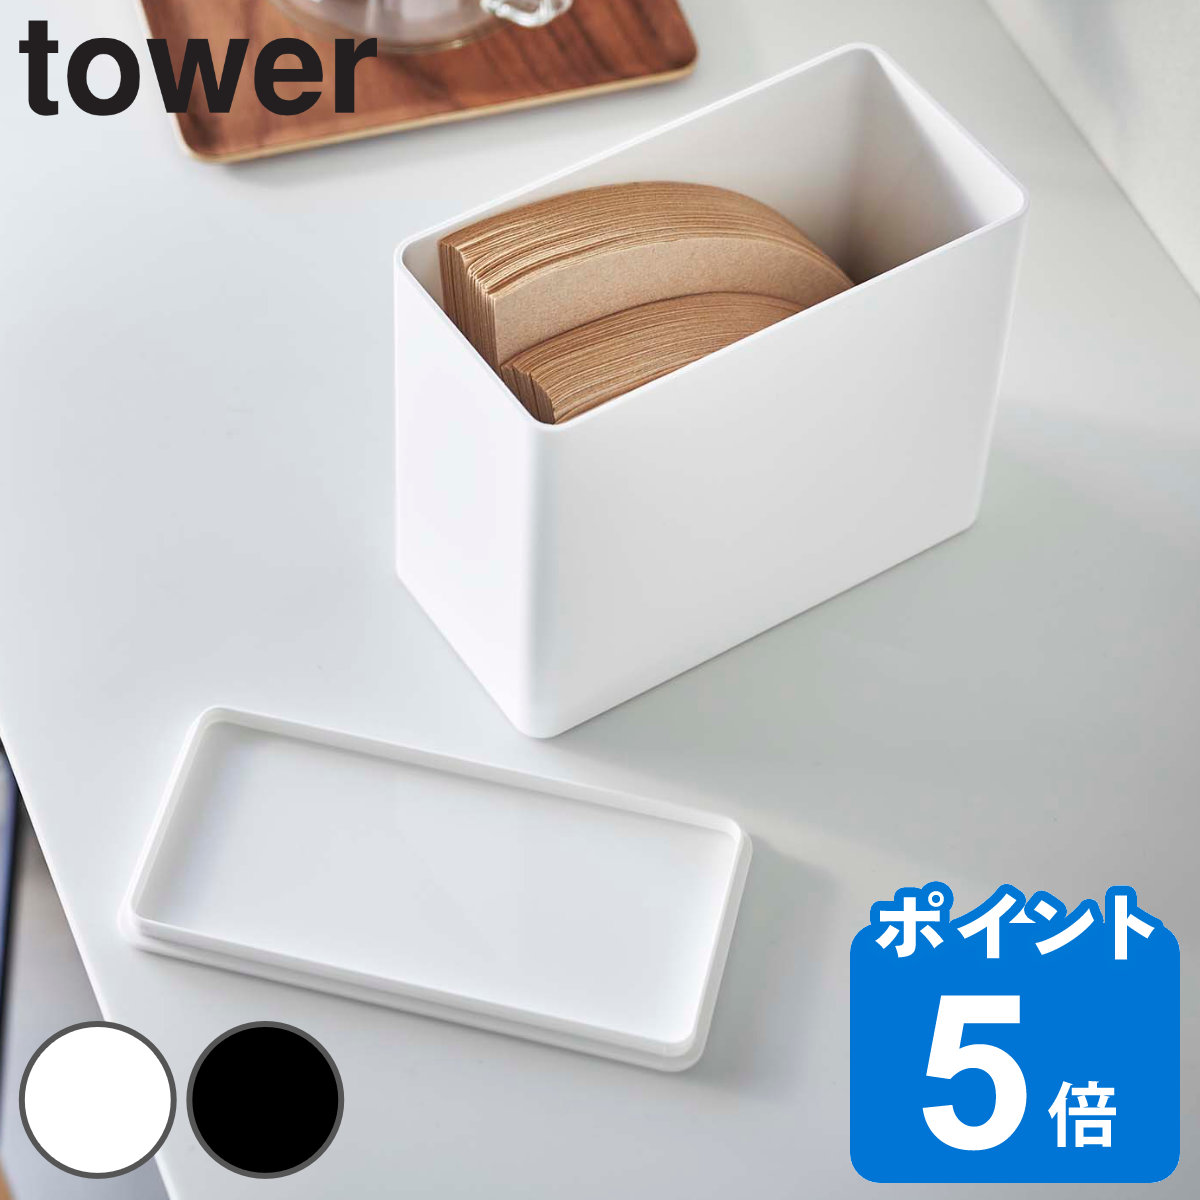 山崎実業 tower コーヒーフィルター収納ケース タワー